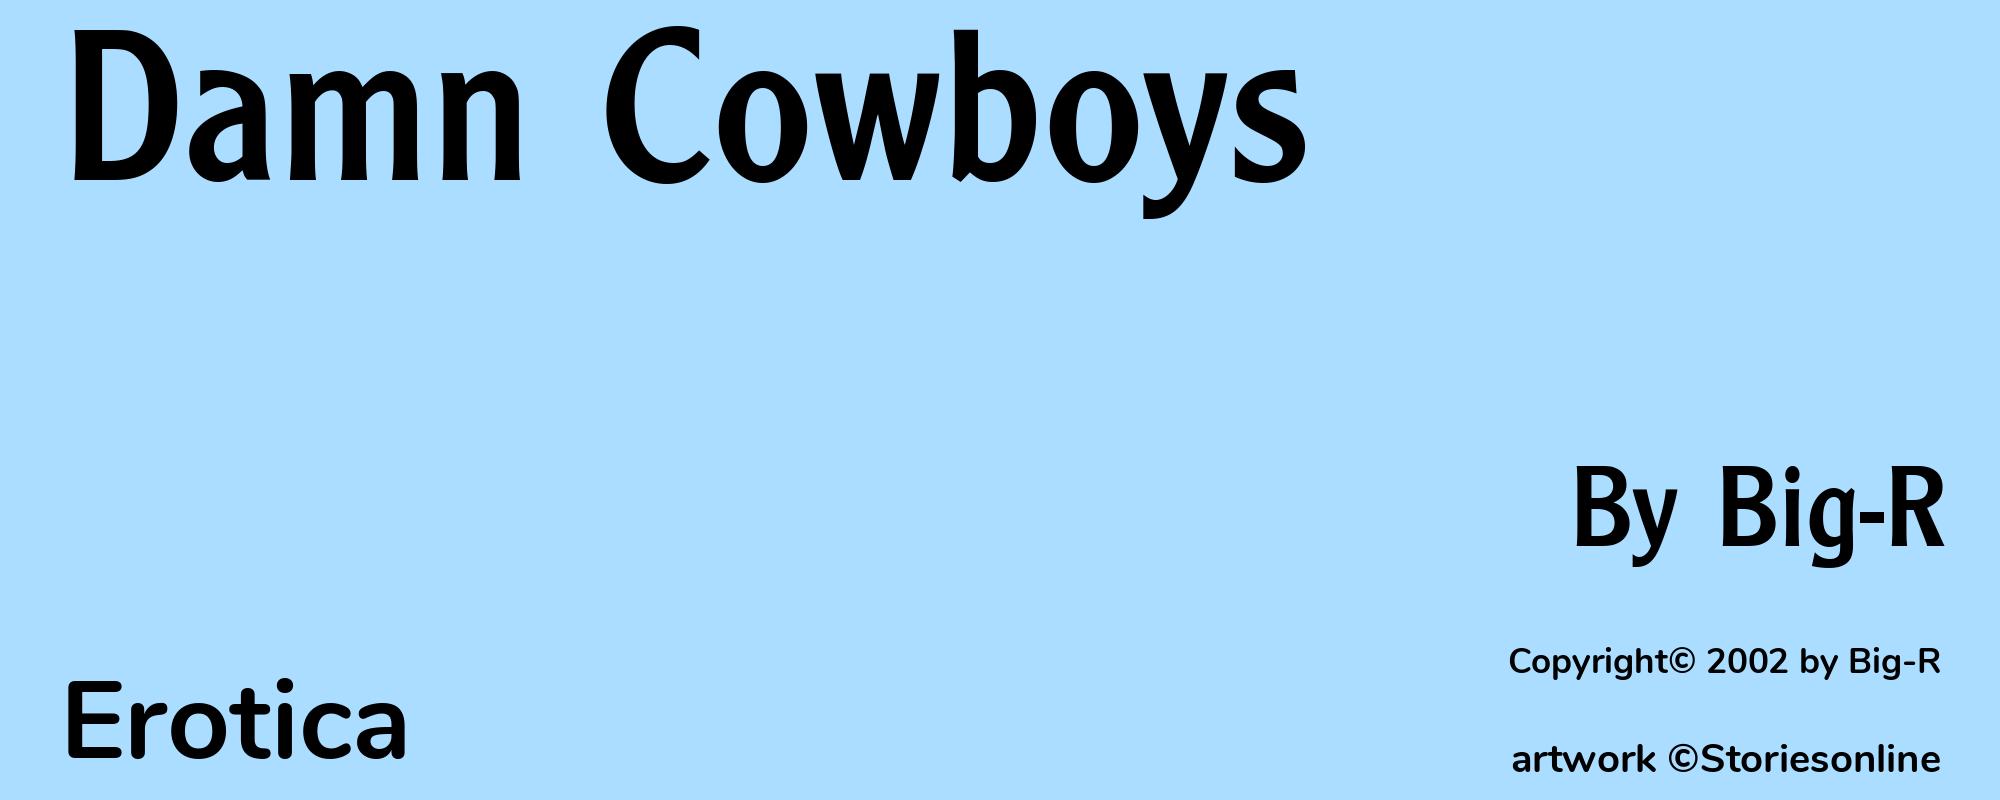 Damn Cowboys - Cover